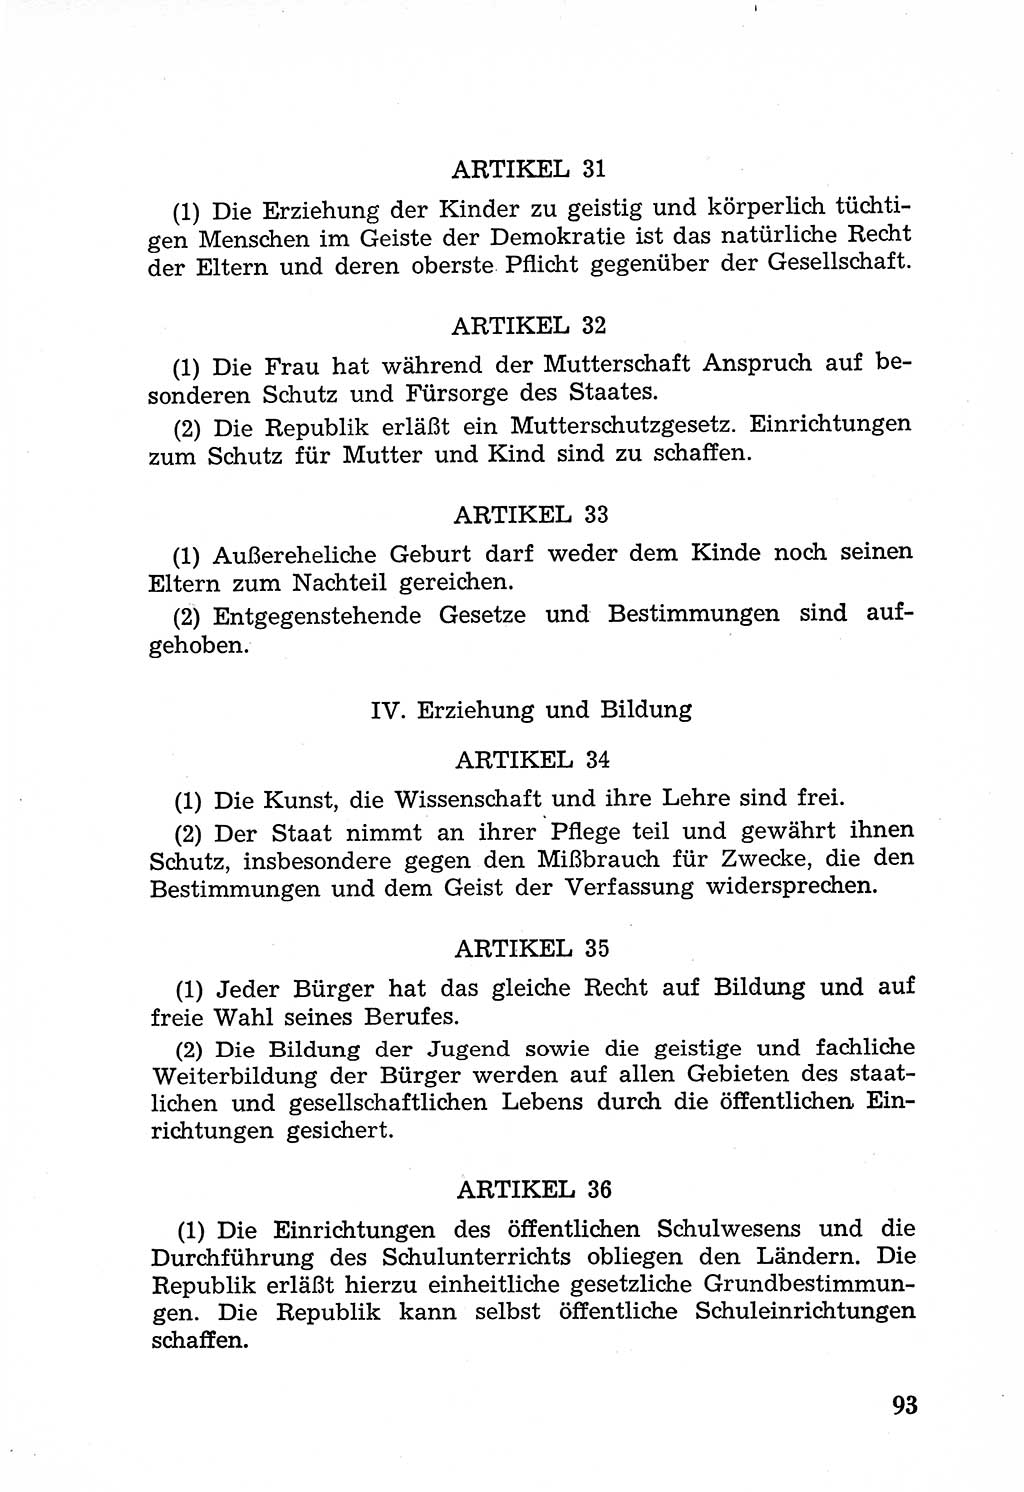 Rechtsstaat in zweierlei Hinsicht, Untersuchungsausschuß freiheitlicher Juristen (UfJ) [Bundesrepublik Deutschland (BRD)] 1956, Seite 93 (R.-St. UfJ BRD 1956, S. 93)